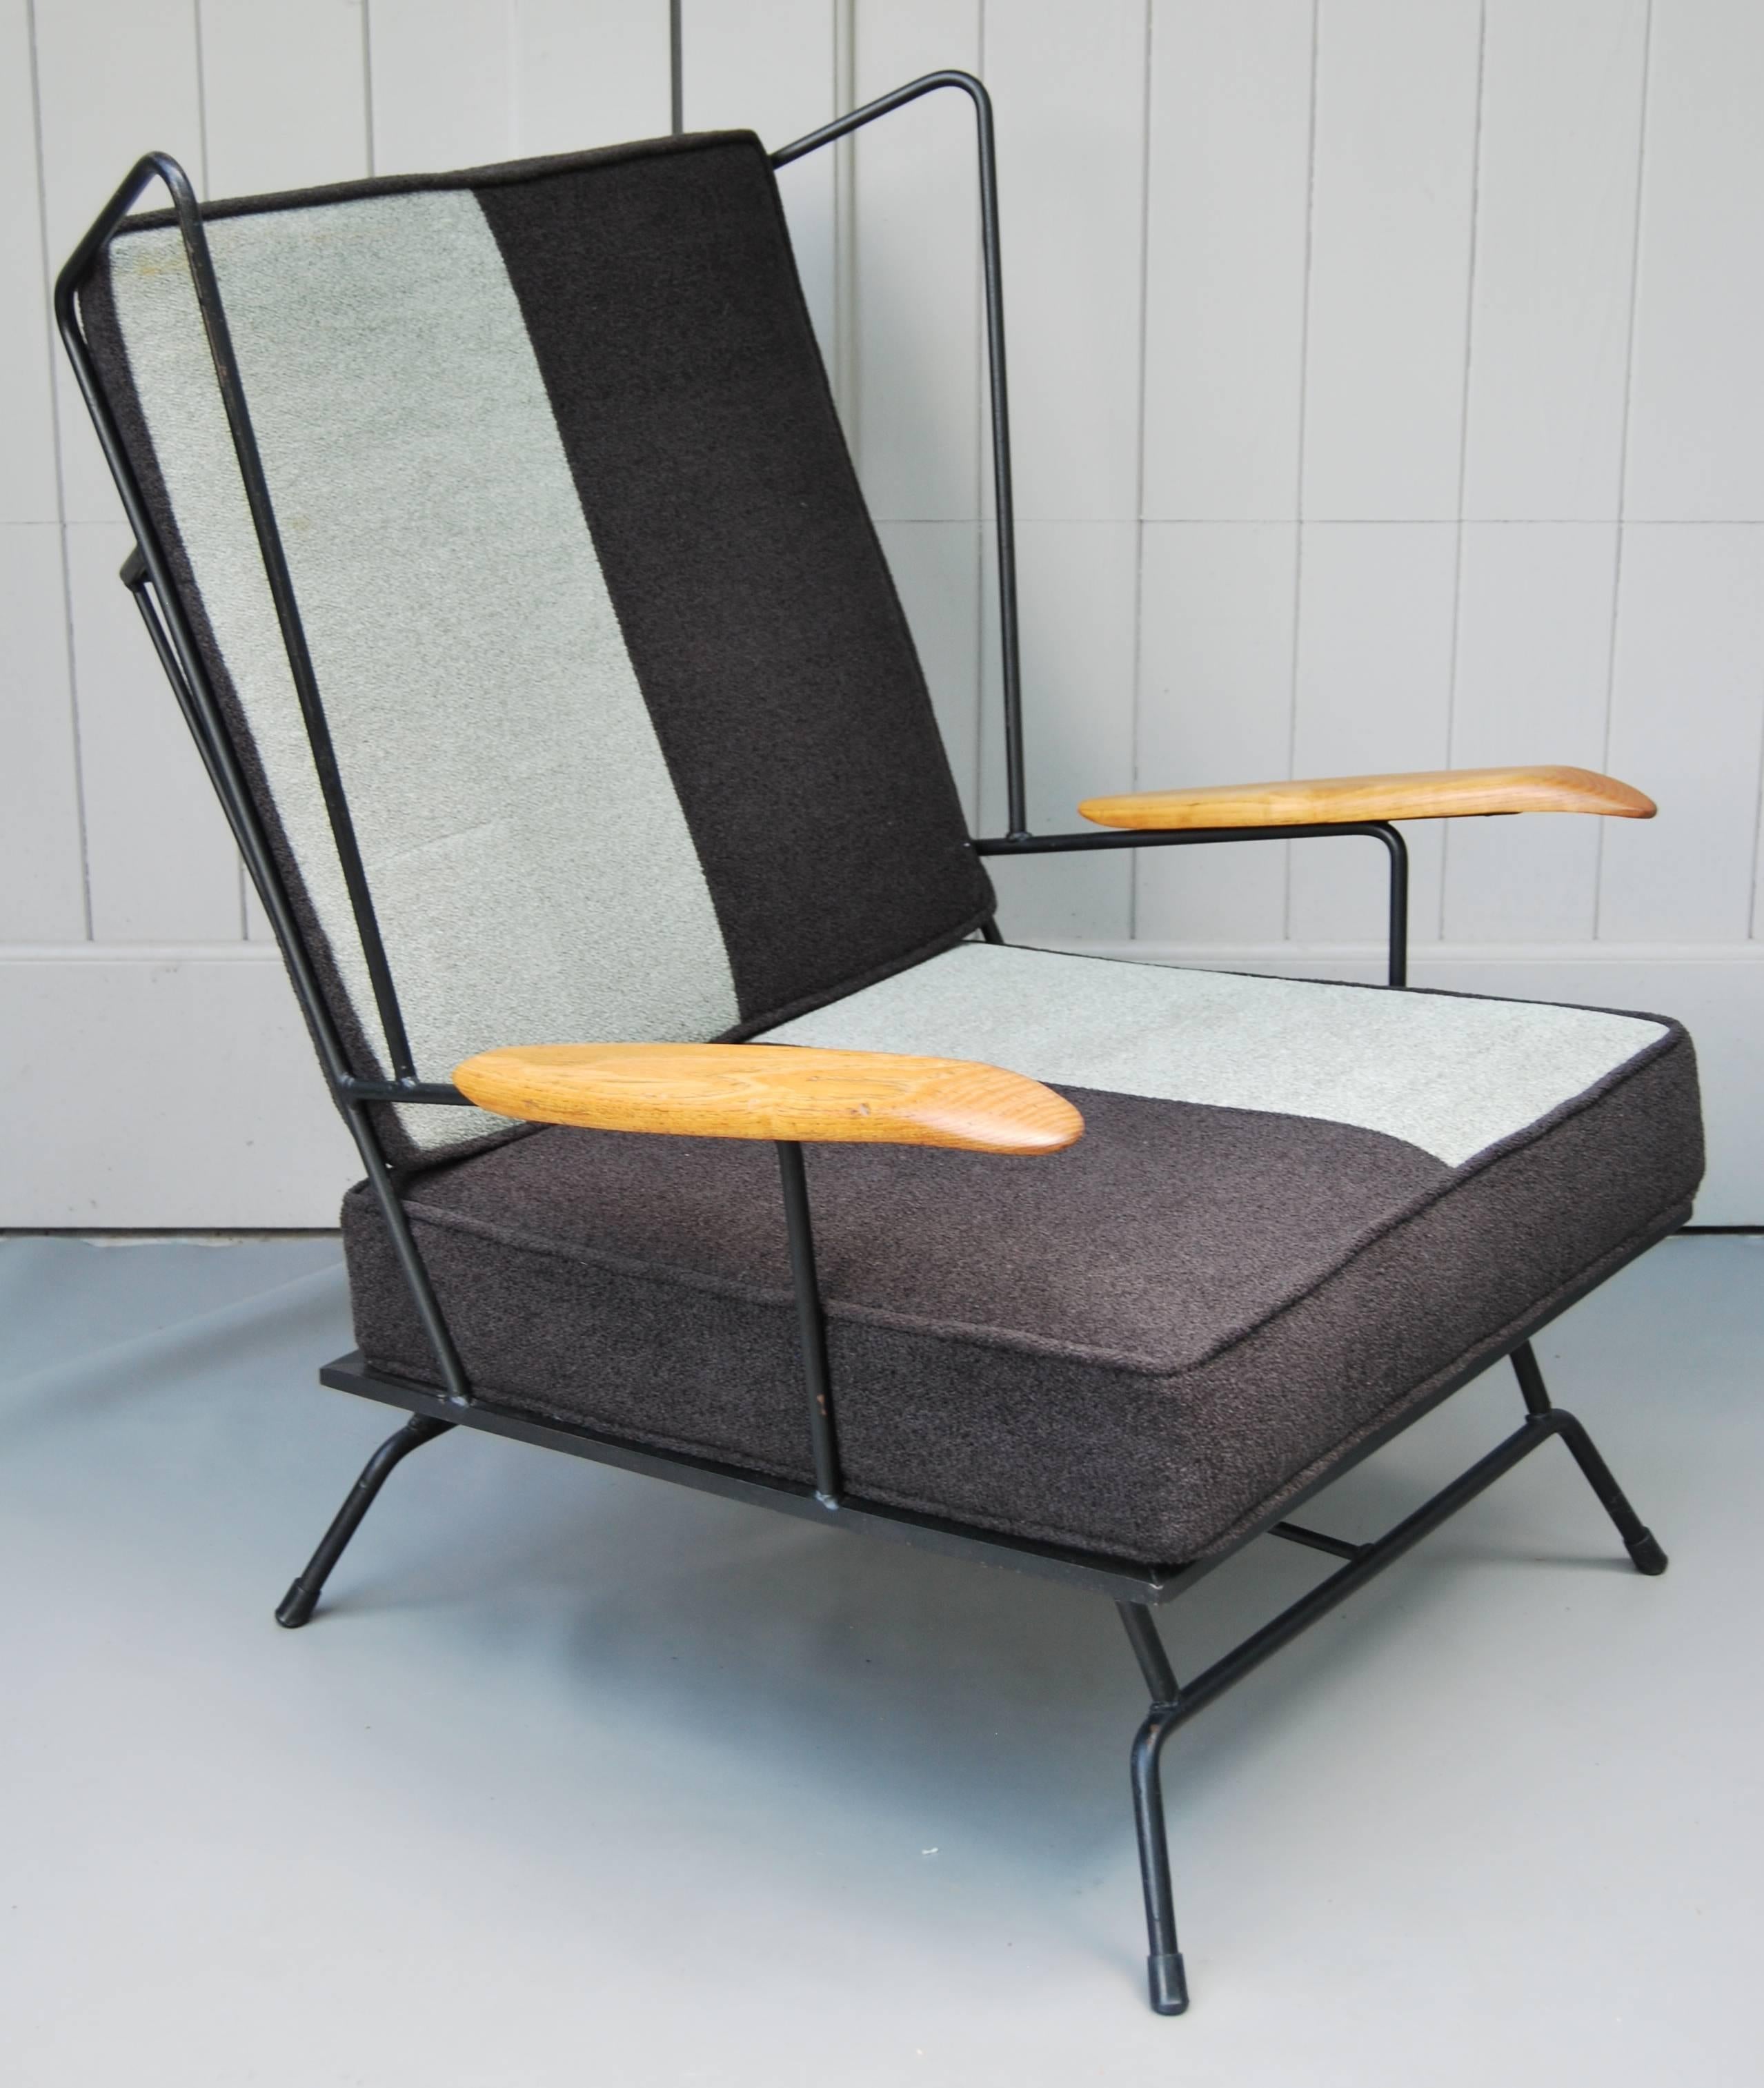 Chaise en fer américaine du début des années 1950 avec ottoman. Accoudoir en bois.
Le cadre en fer a été remis en état et les coussins ont été retapissés en tissu chenille noir et gris.